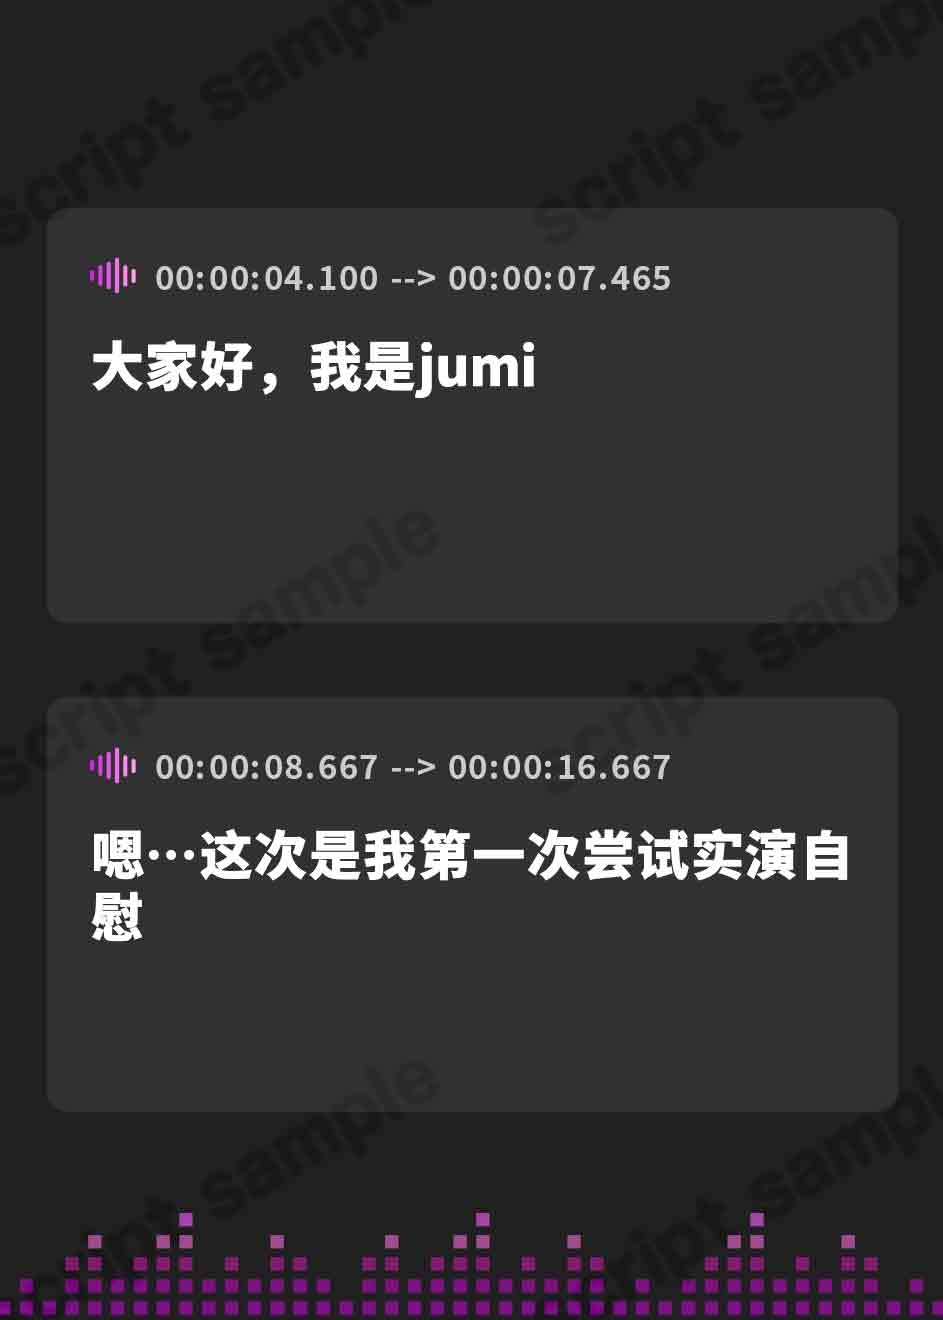 【簡体中文版】THE FIRST CHALLENGE jumi『実演は絶対嫌!!』と断られ続けた jumiちゃんの初めての実演ガチオナニー